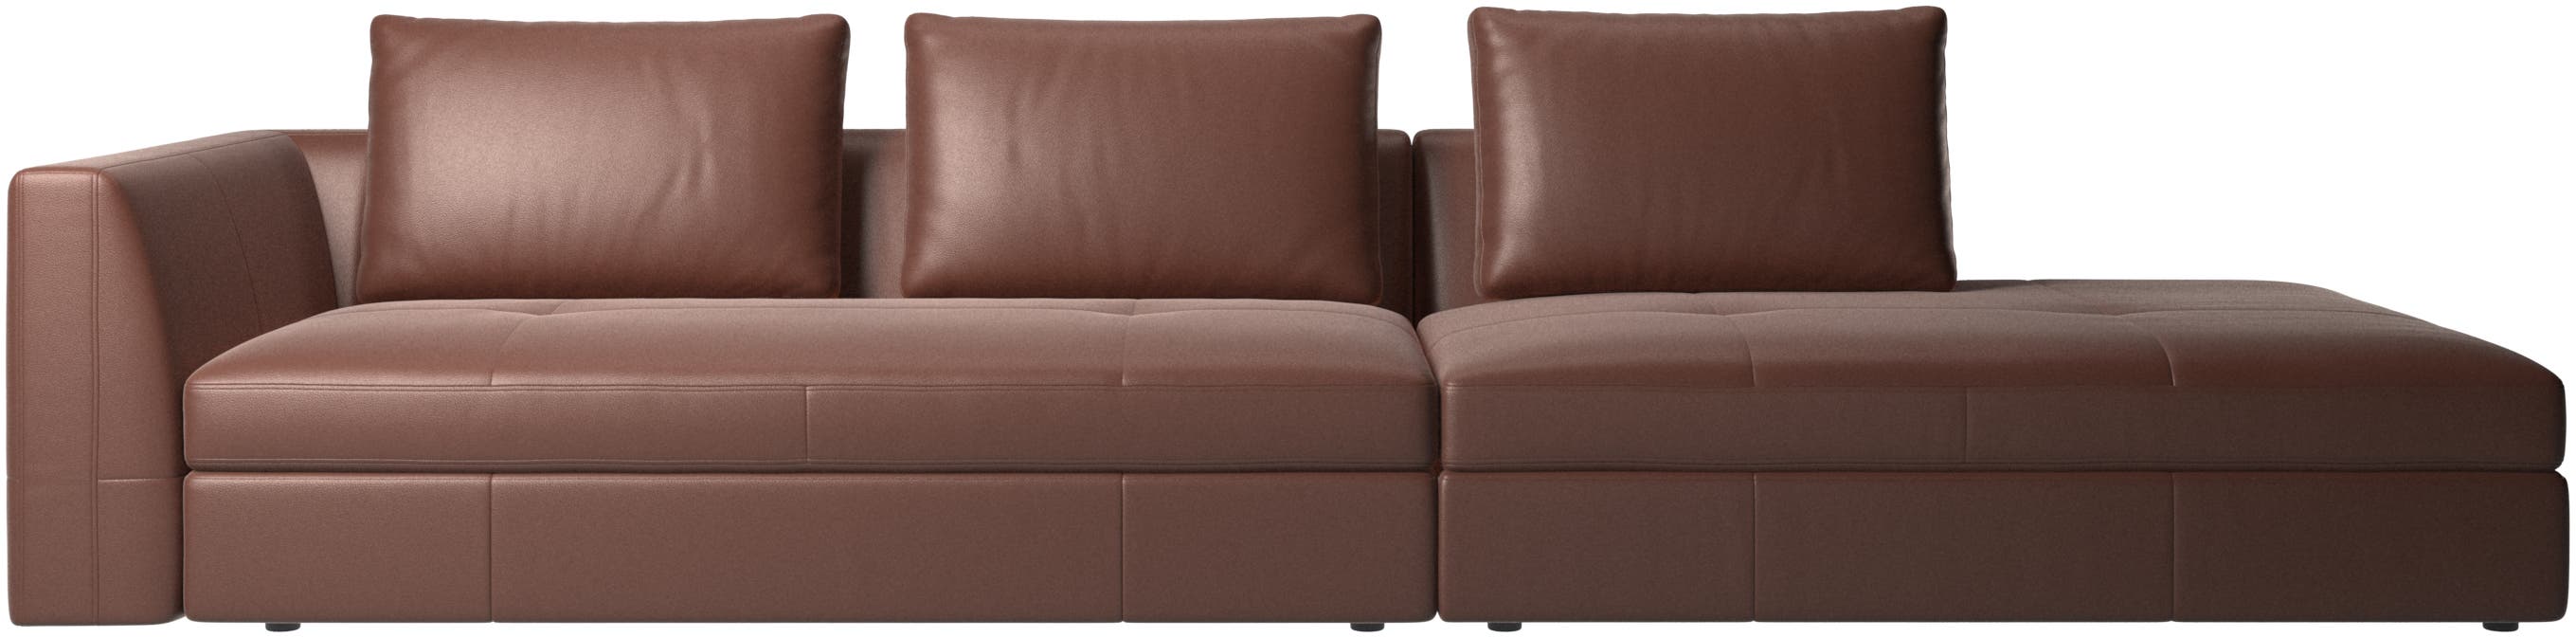 Bergamo-sohva, lepomoduulilla